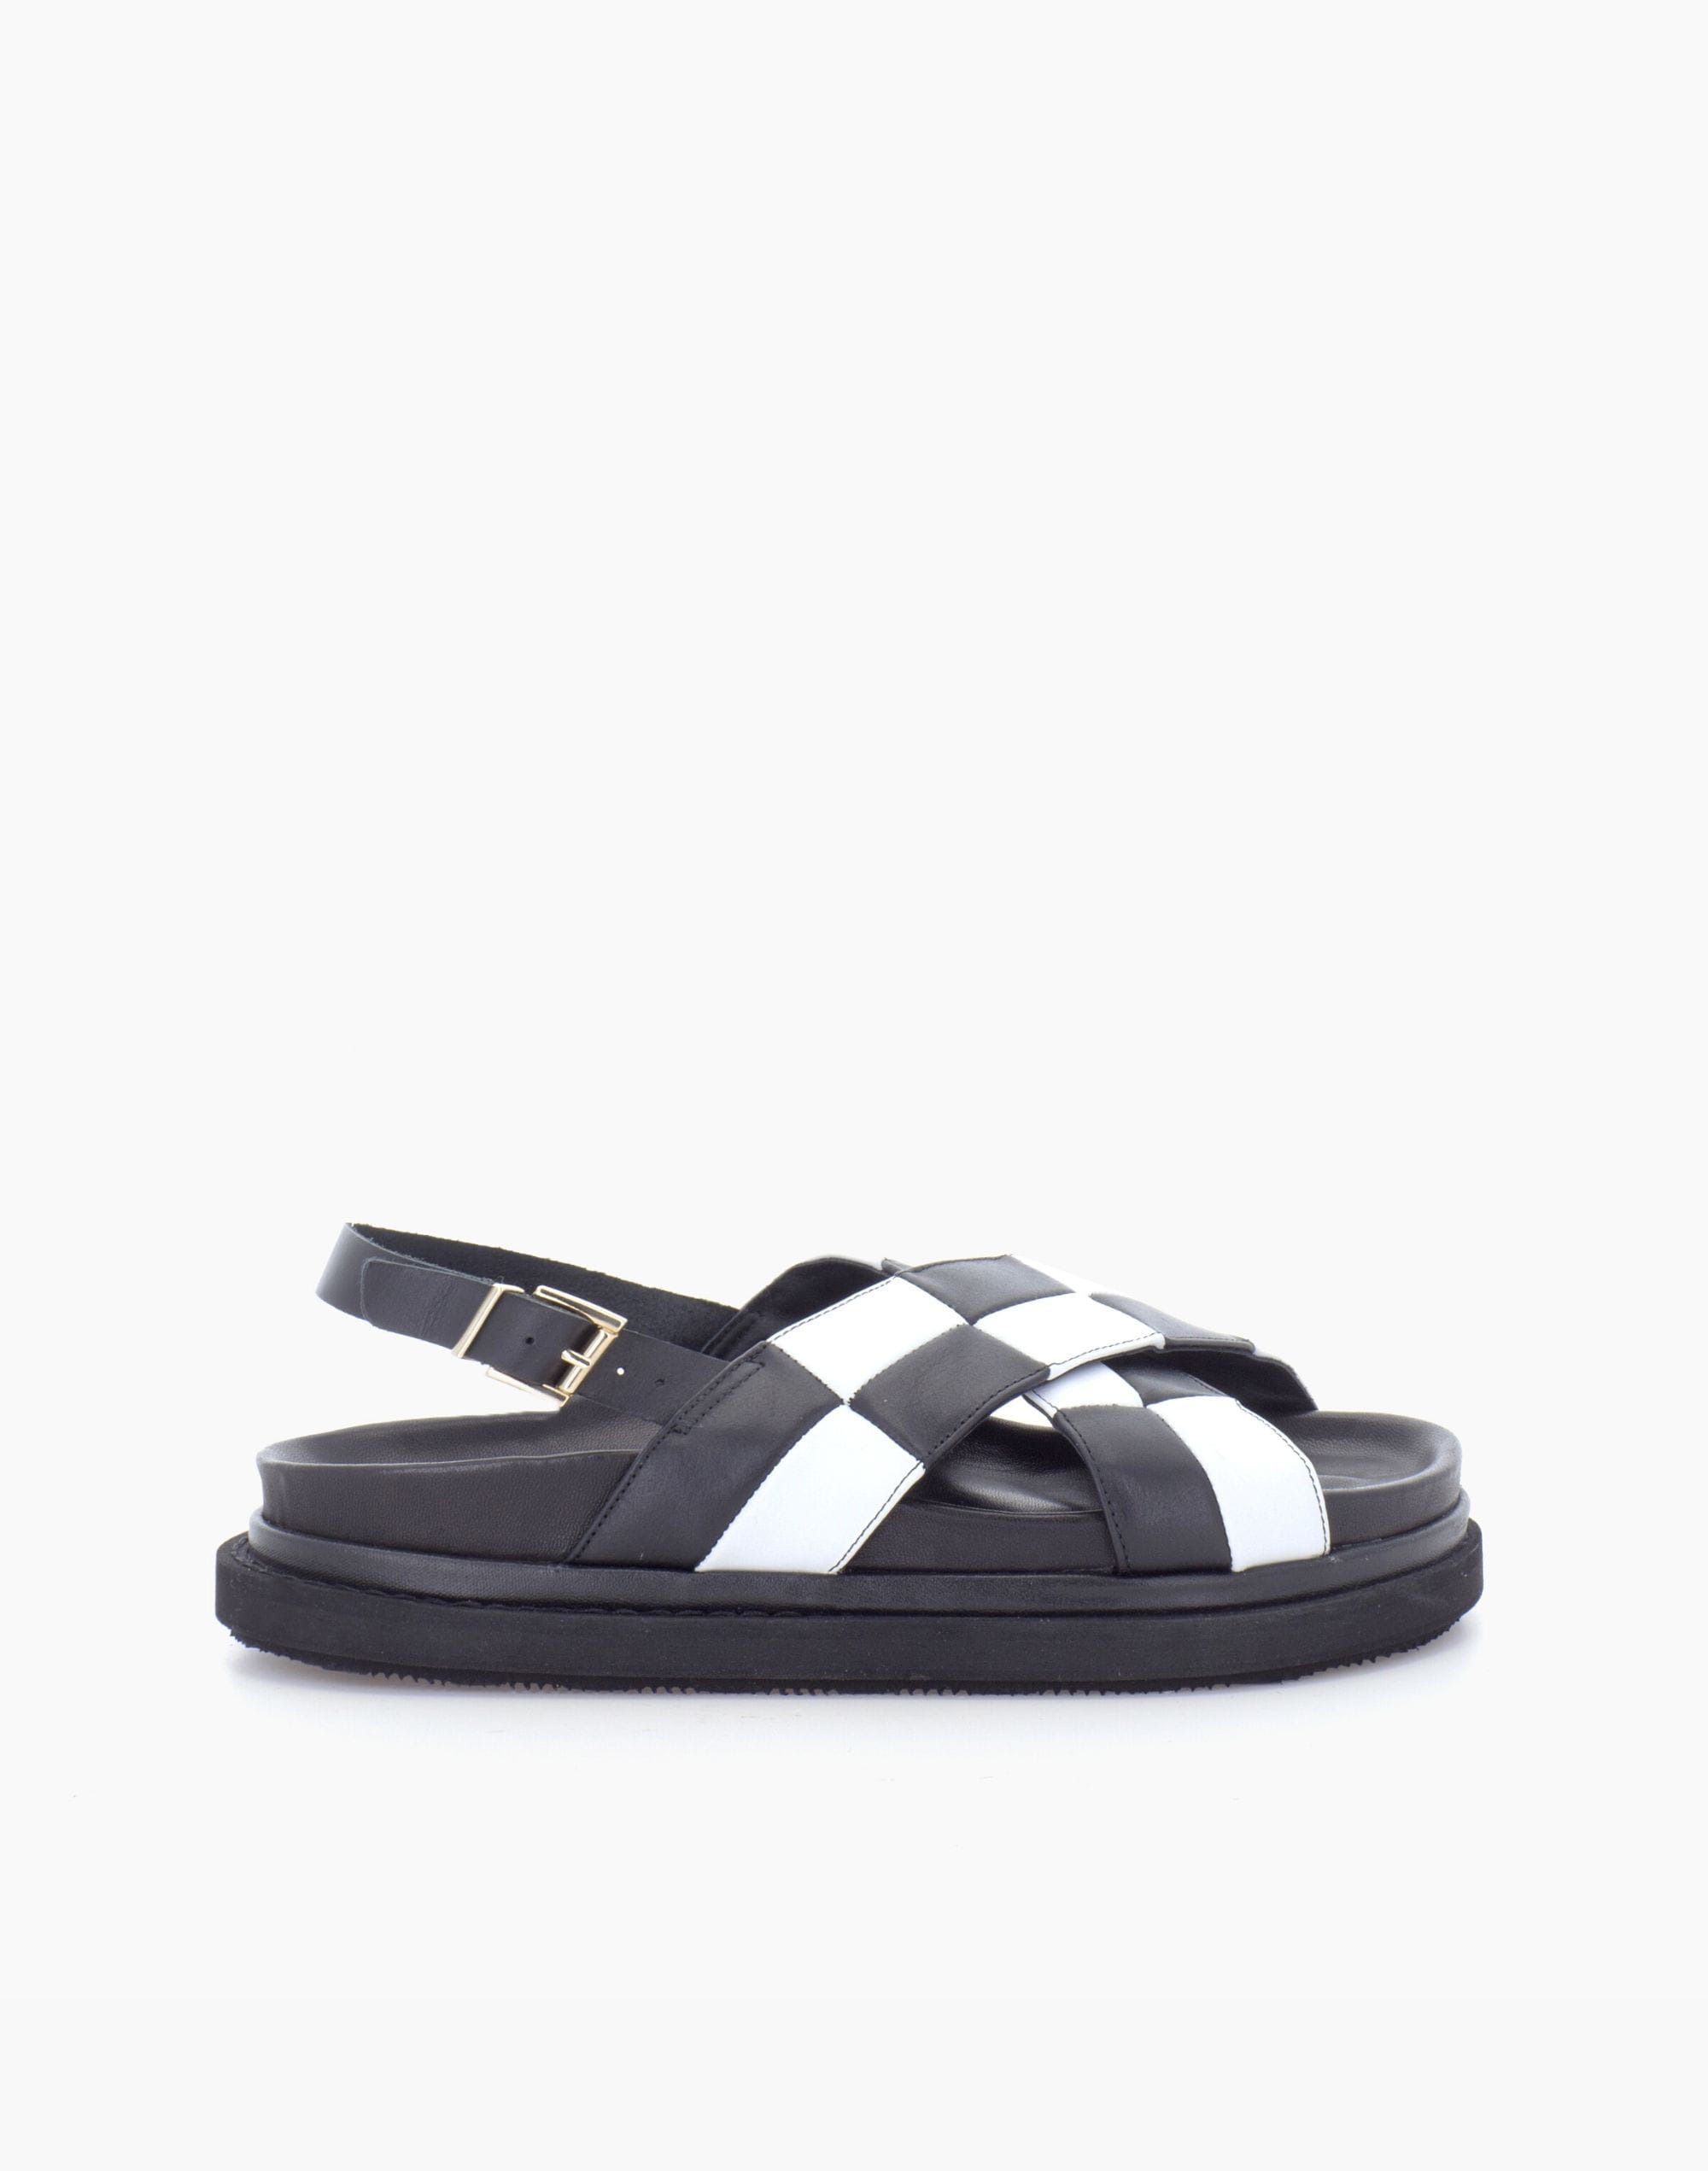 ALOHAS Marshmallow Scacchi Black & White Sandal